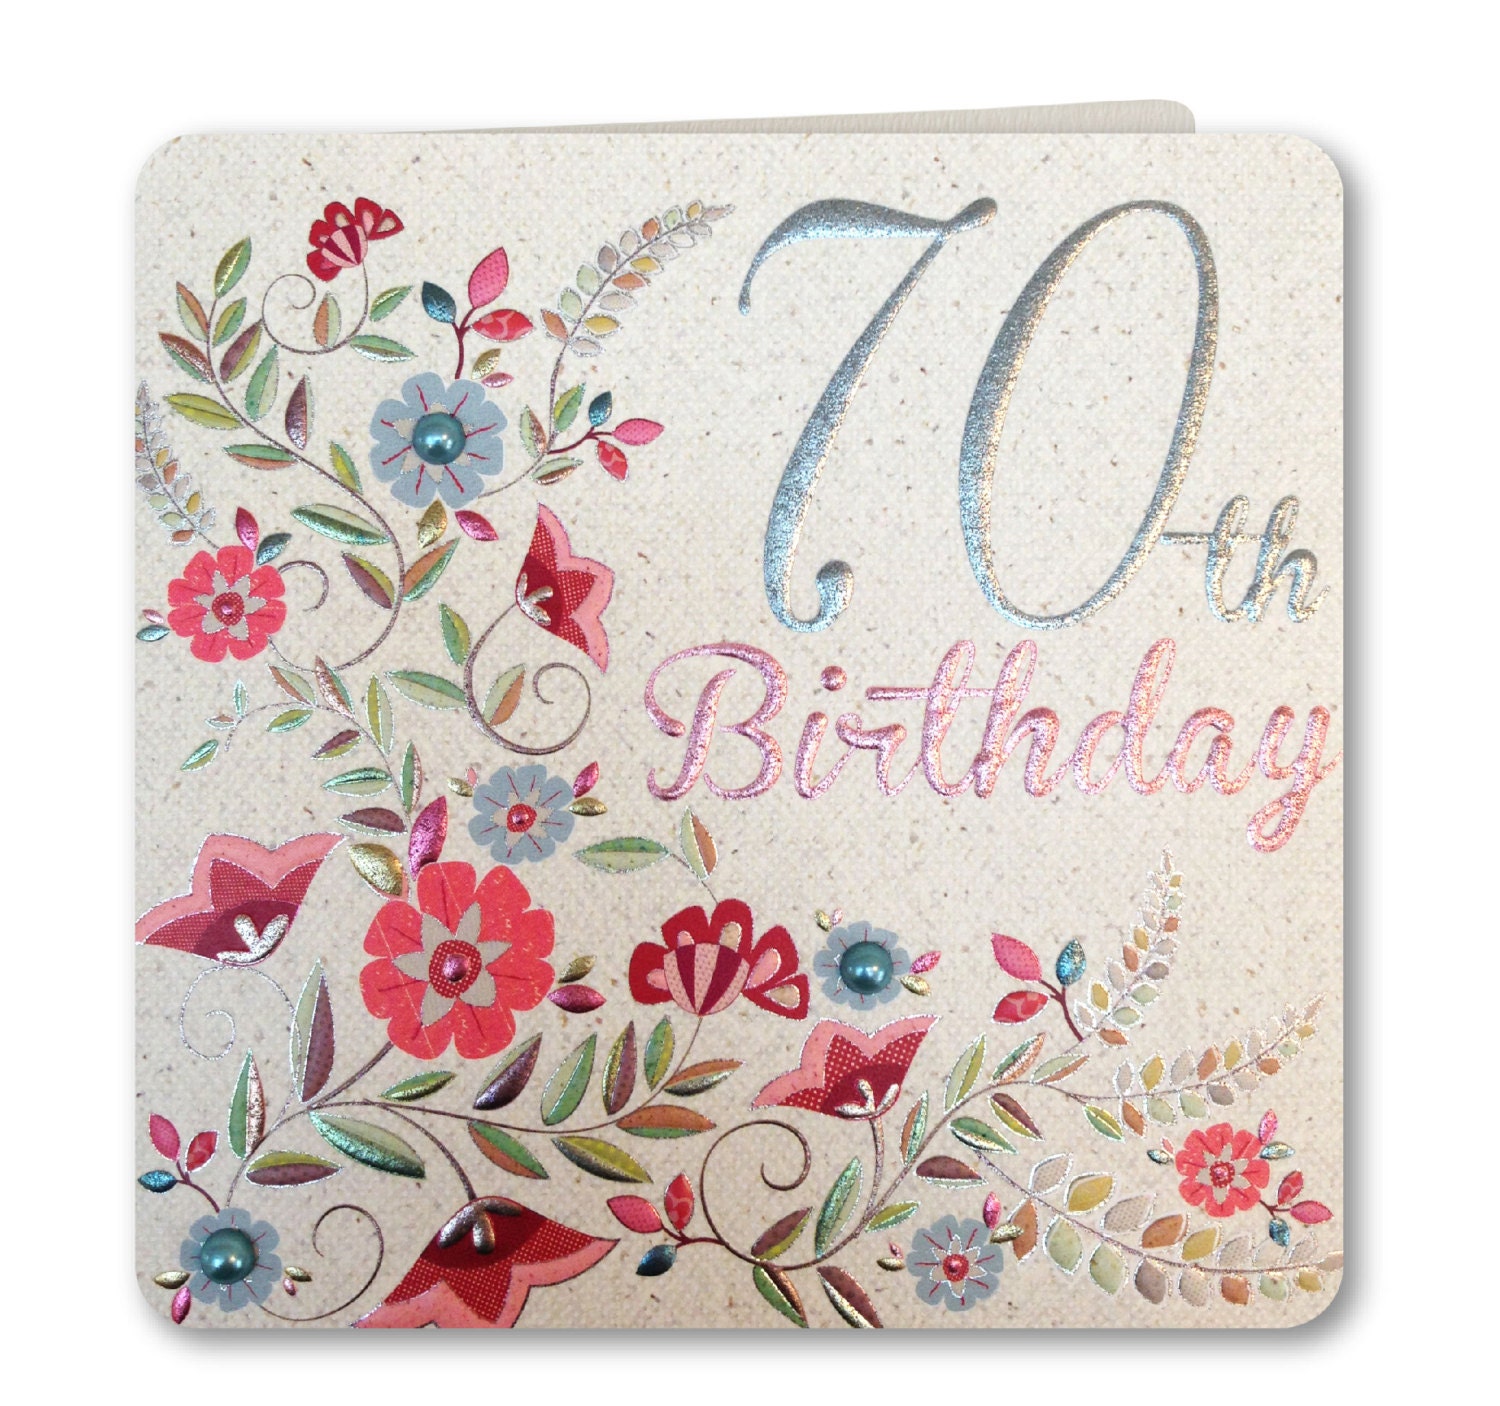  Birthday  Card  Happy 70th  Birthday  70th  Birthday  Card 